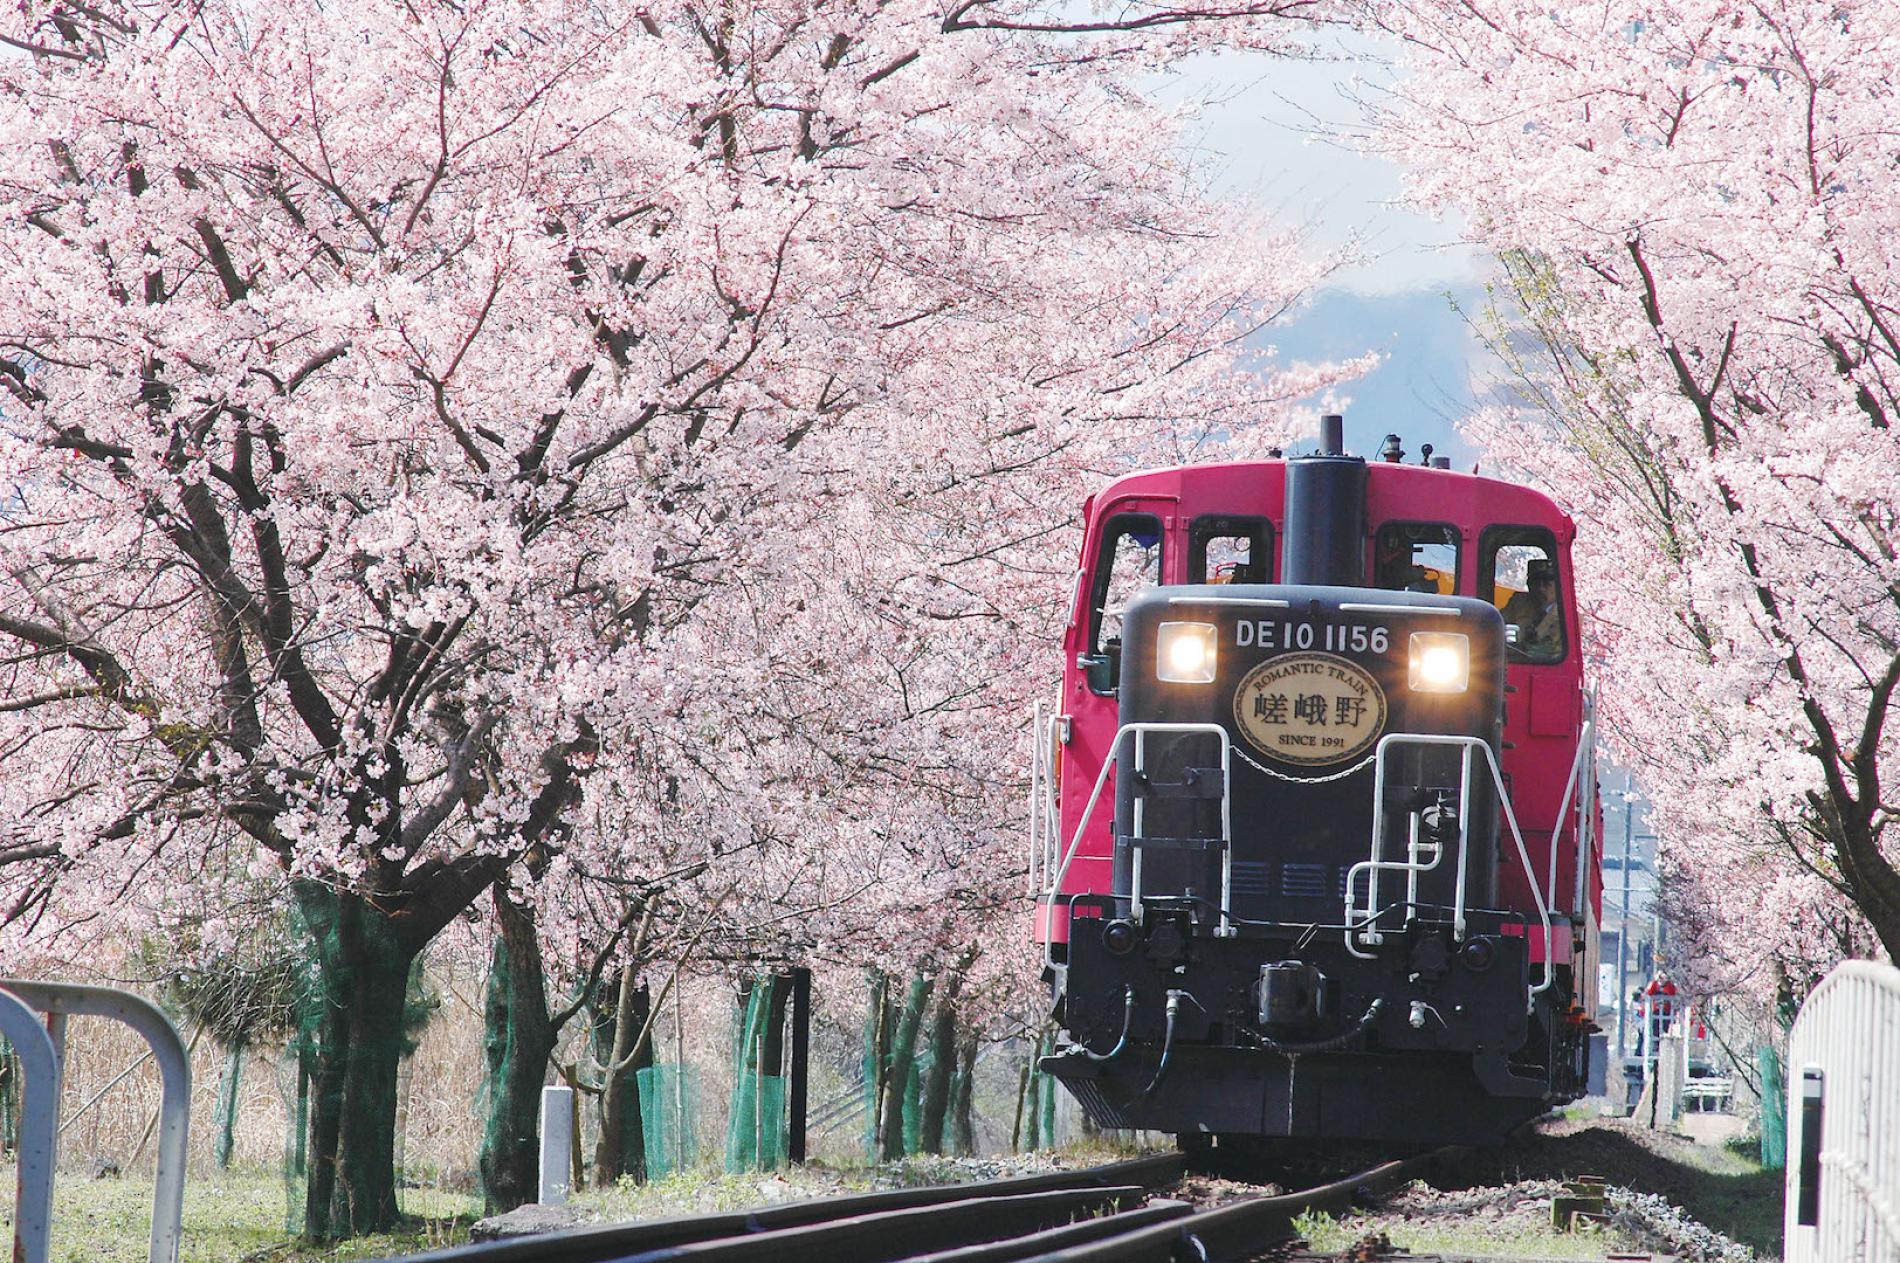 Day Tour Ngồi Tàu Hỏa Sagano Romantic Train Và Tham Quan Đền Fushimi Inari  (Từ Osaka) - KKday